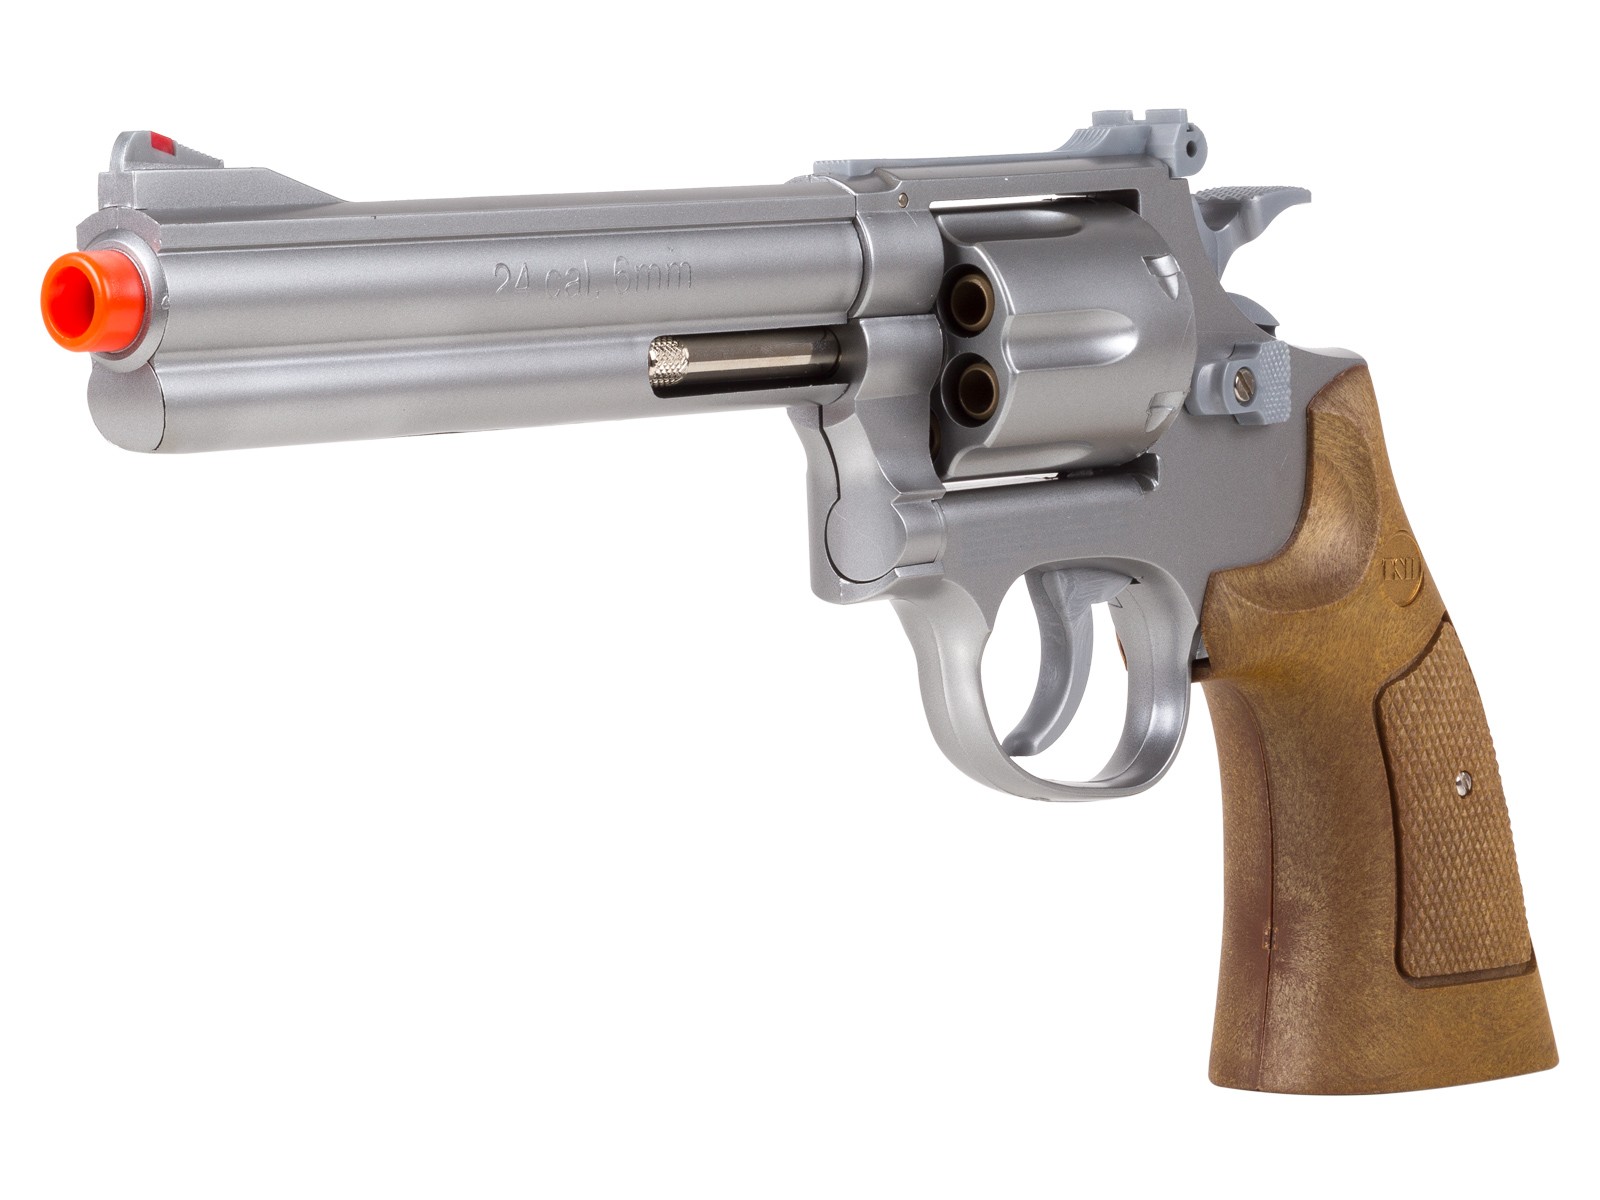 TSD 934 UHC 6 inch revolver, Silver/Brown 6mm